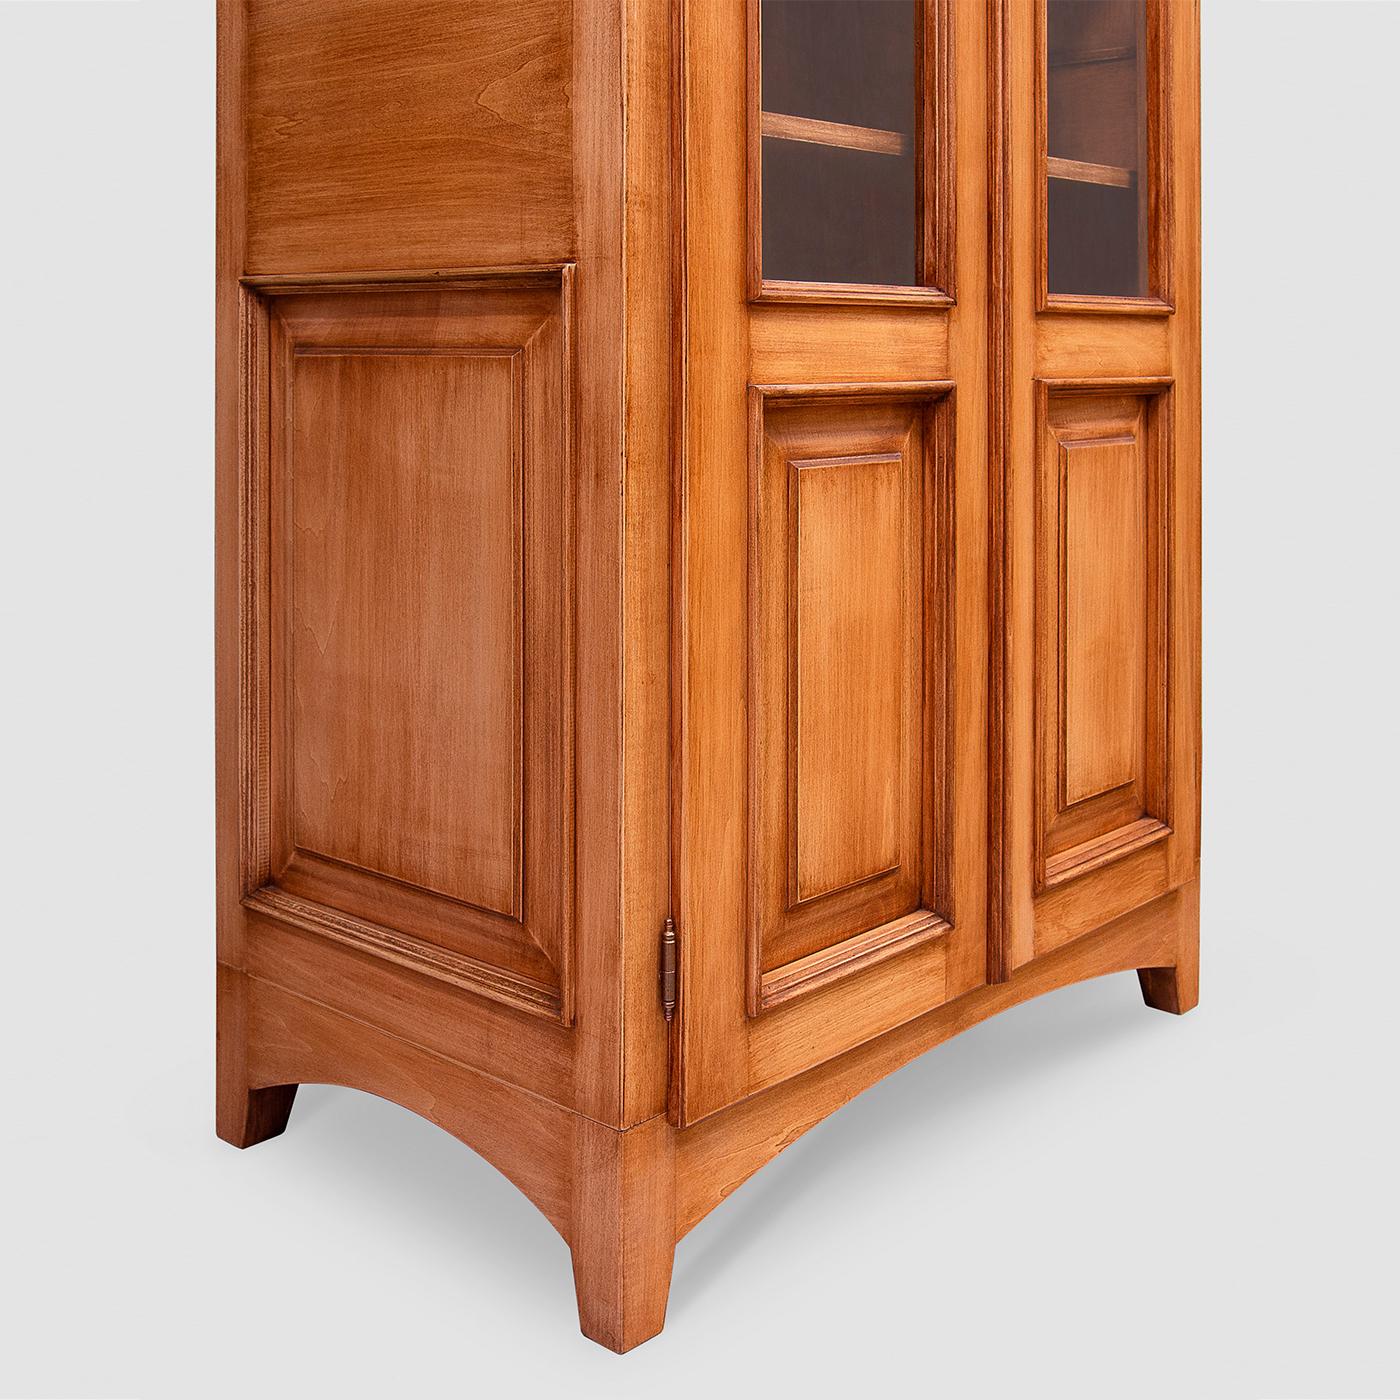 Dieses Bücherregal ist ein exquisites Beispiel für den klassischen Stil. Es besteht aus einer hohen Struktur, die vollständig von Hand aus Tulipwood gefertigt und mit ungiftigen, nachhaltigen Lacken in hellem Nussbaum gebeizt wurde. Die Türen mit